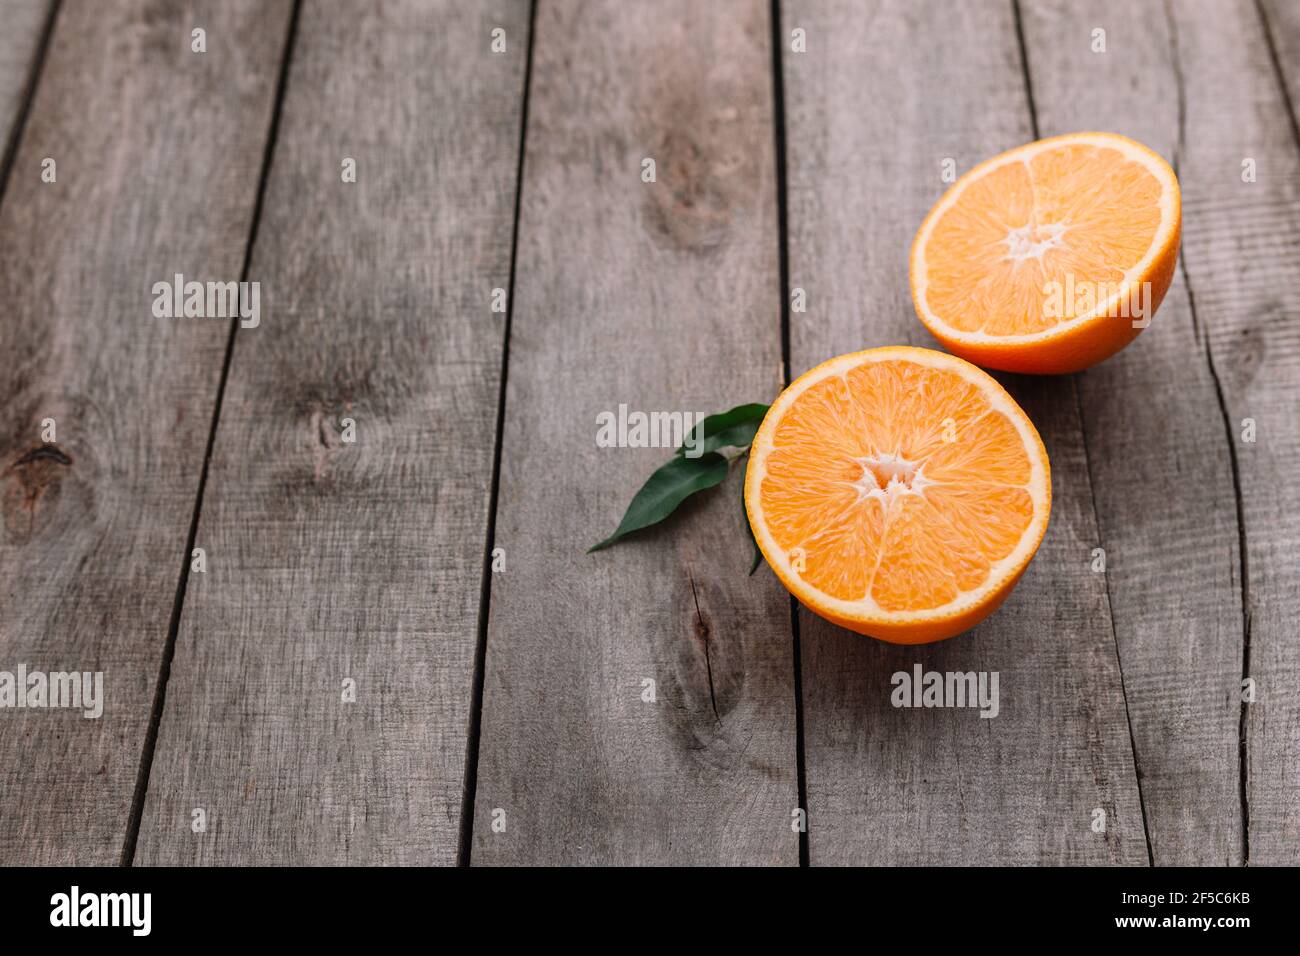 Moitiés de fruit orange sur fond en bois gris. Pulpe d'orange et feuilles vertes Banque D'Images